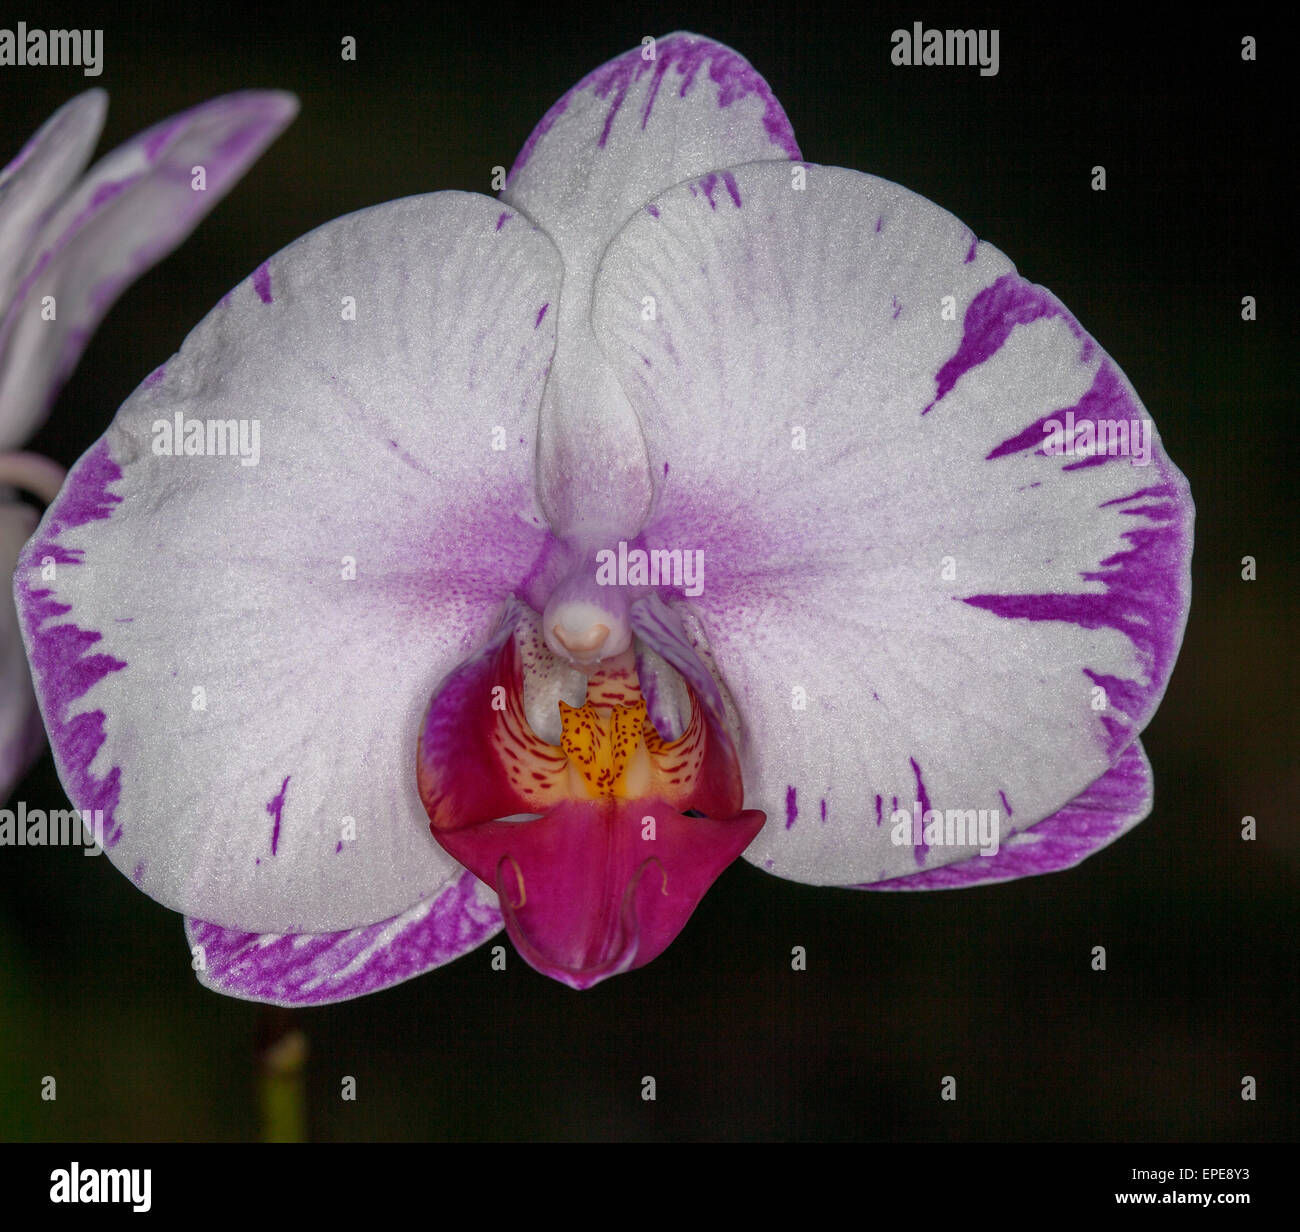 Doritaenopsis 'Lightning' mutation, orchidée, fleur blanche avec des touches de magenta / violet sur fond sombre Banque D'Images